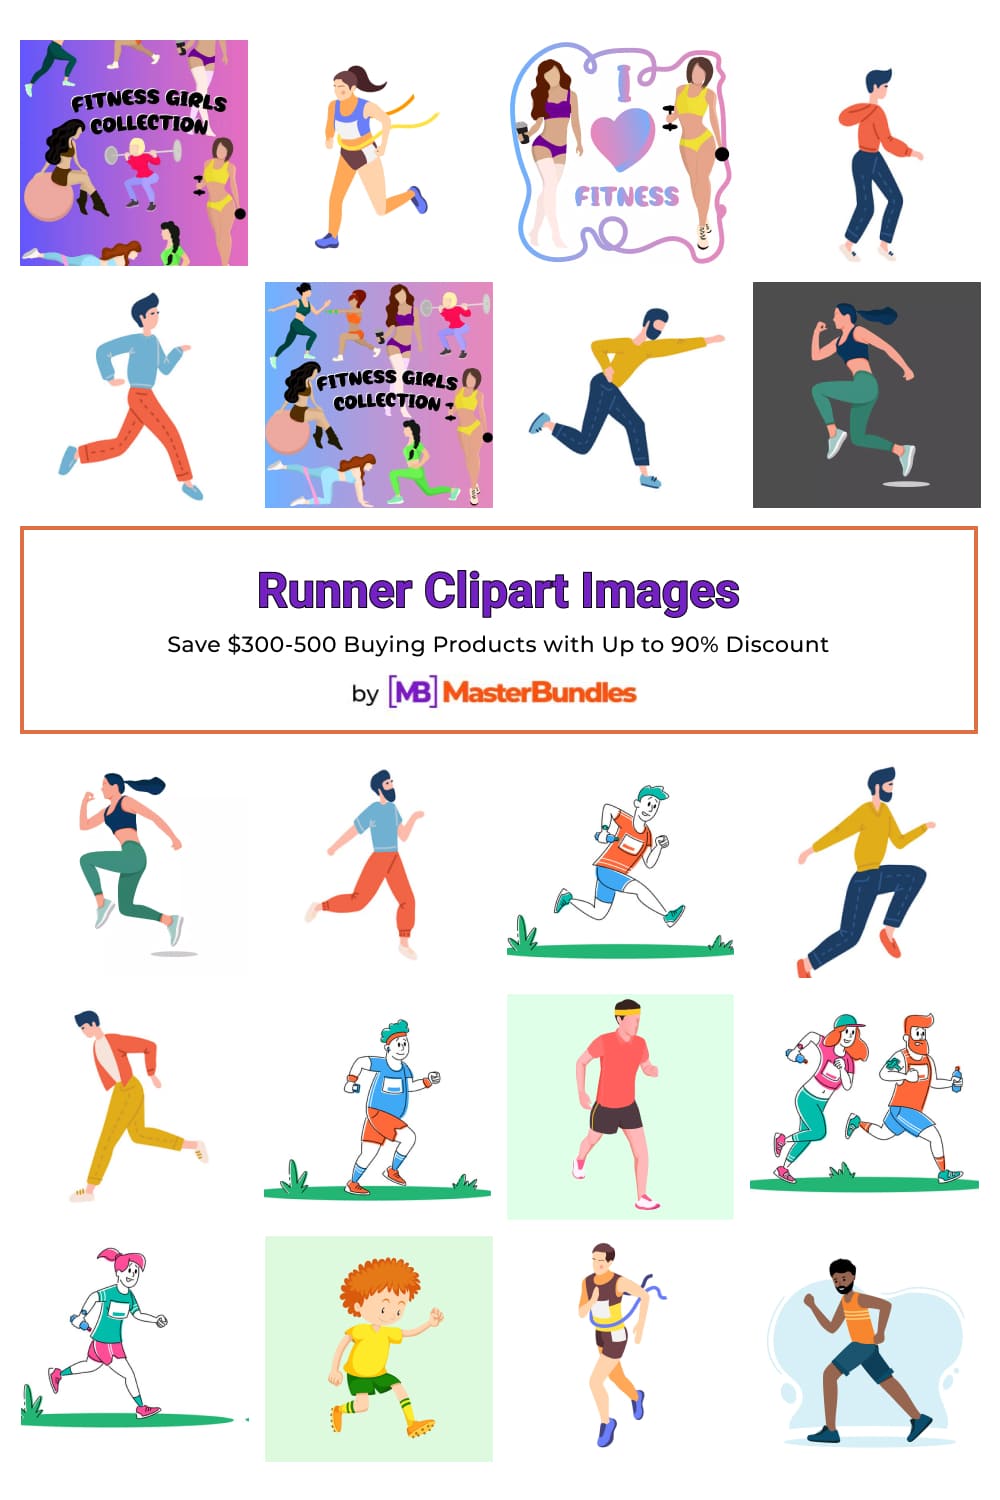 Runner Clipart Images Pinterest image.